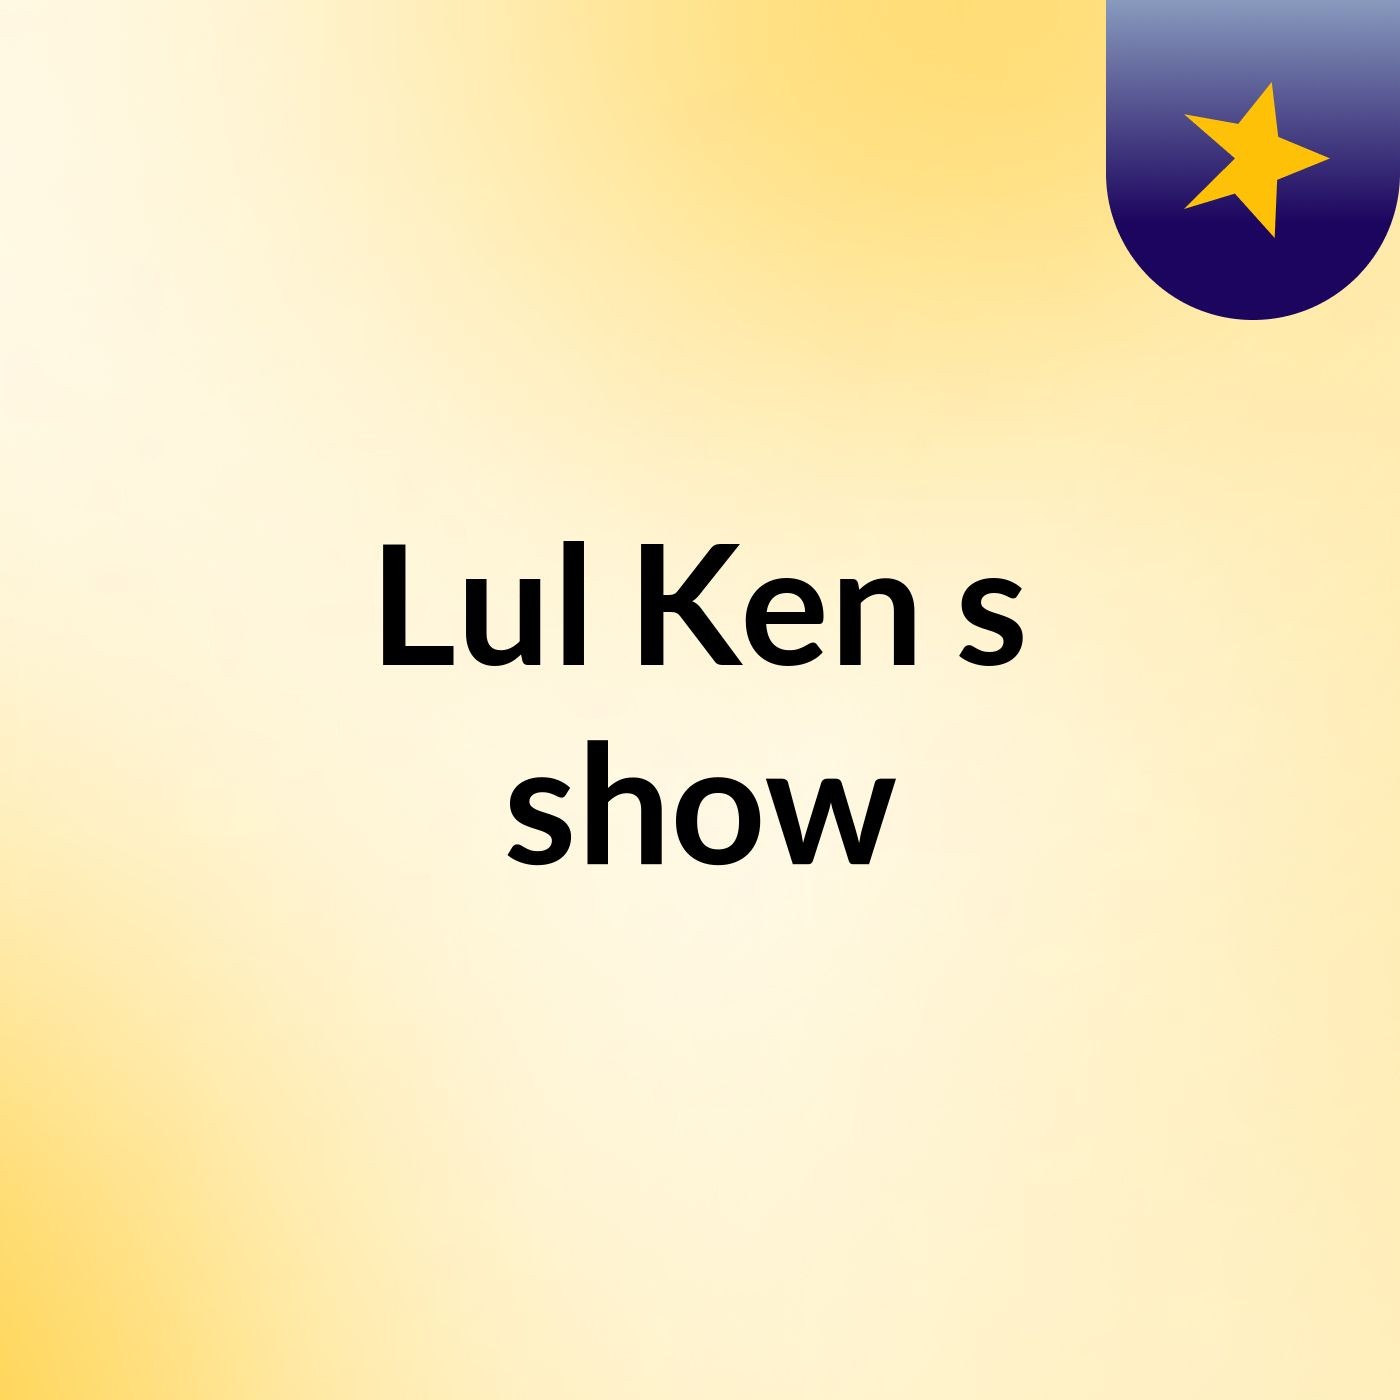 Episode 5 - Lul Ken's show